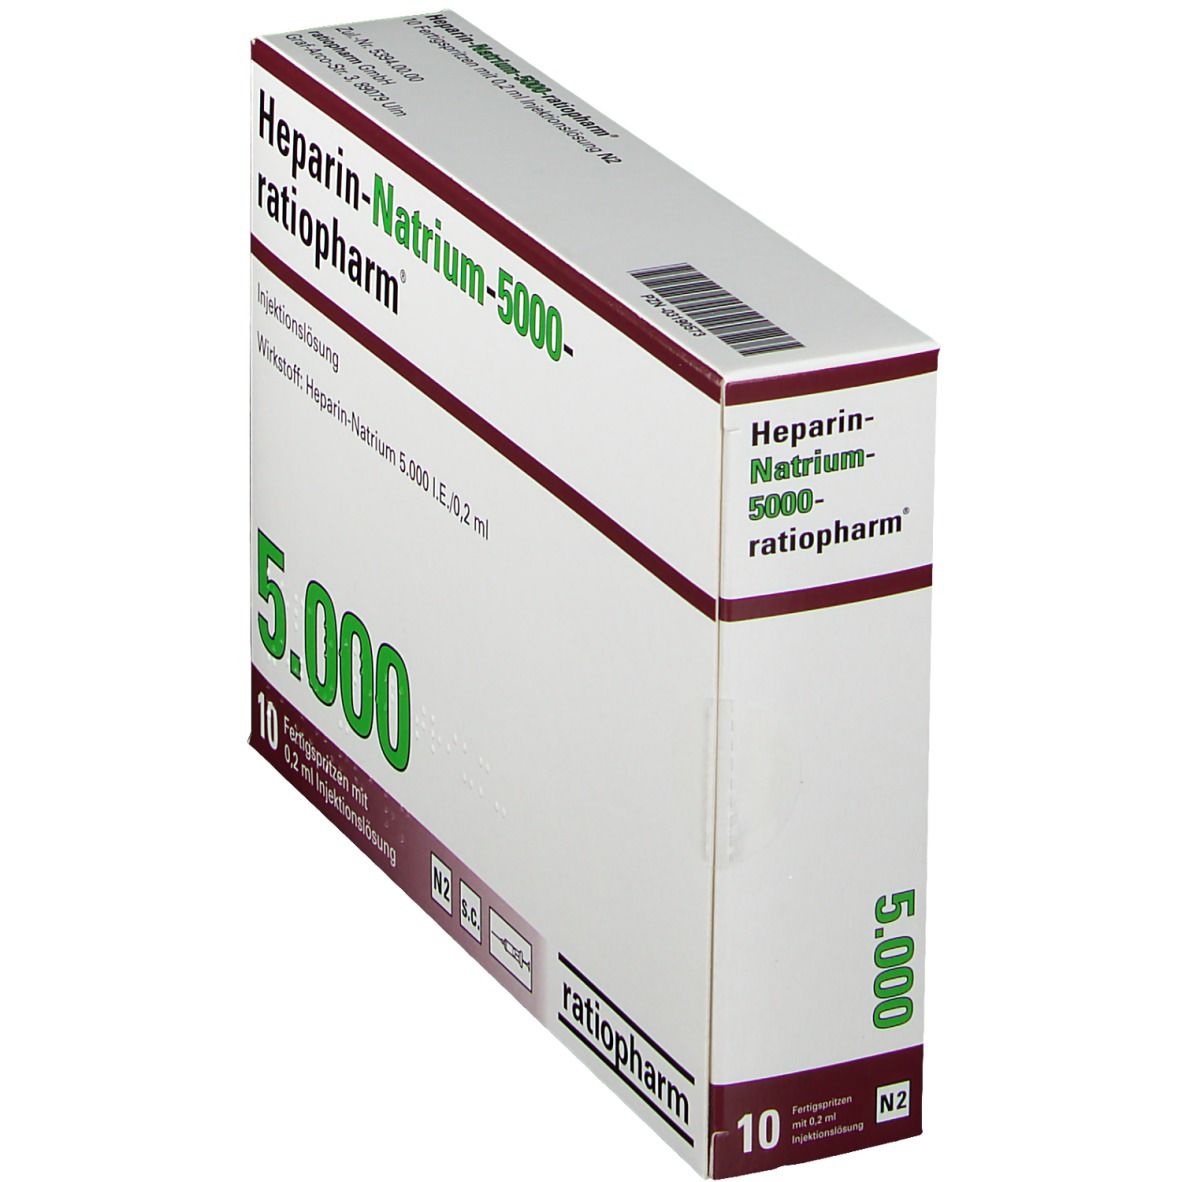 Heparin-Natrium-5000-ratiopharm®